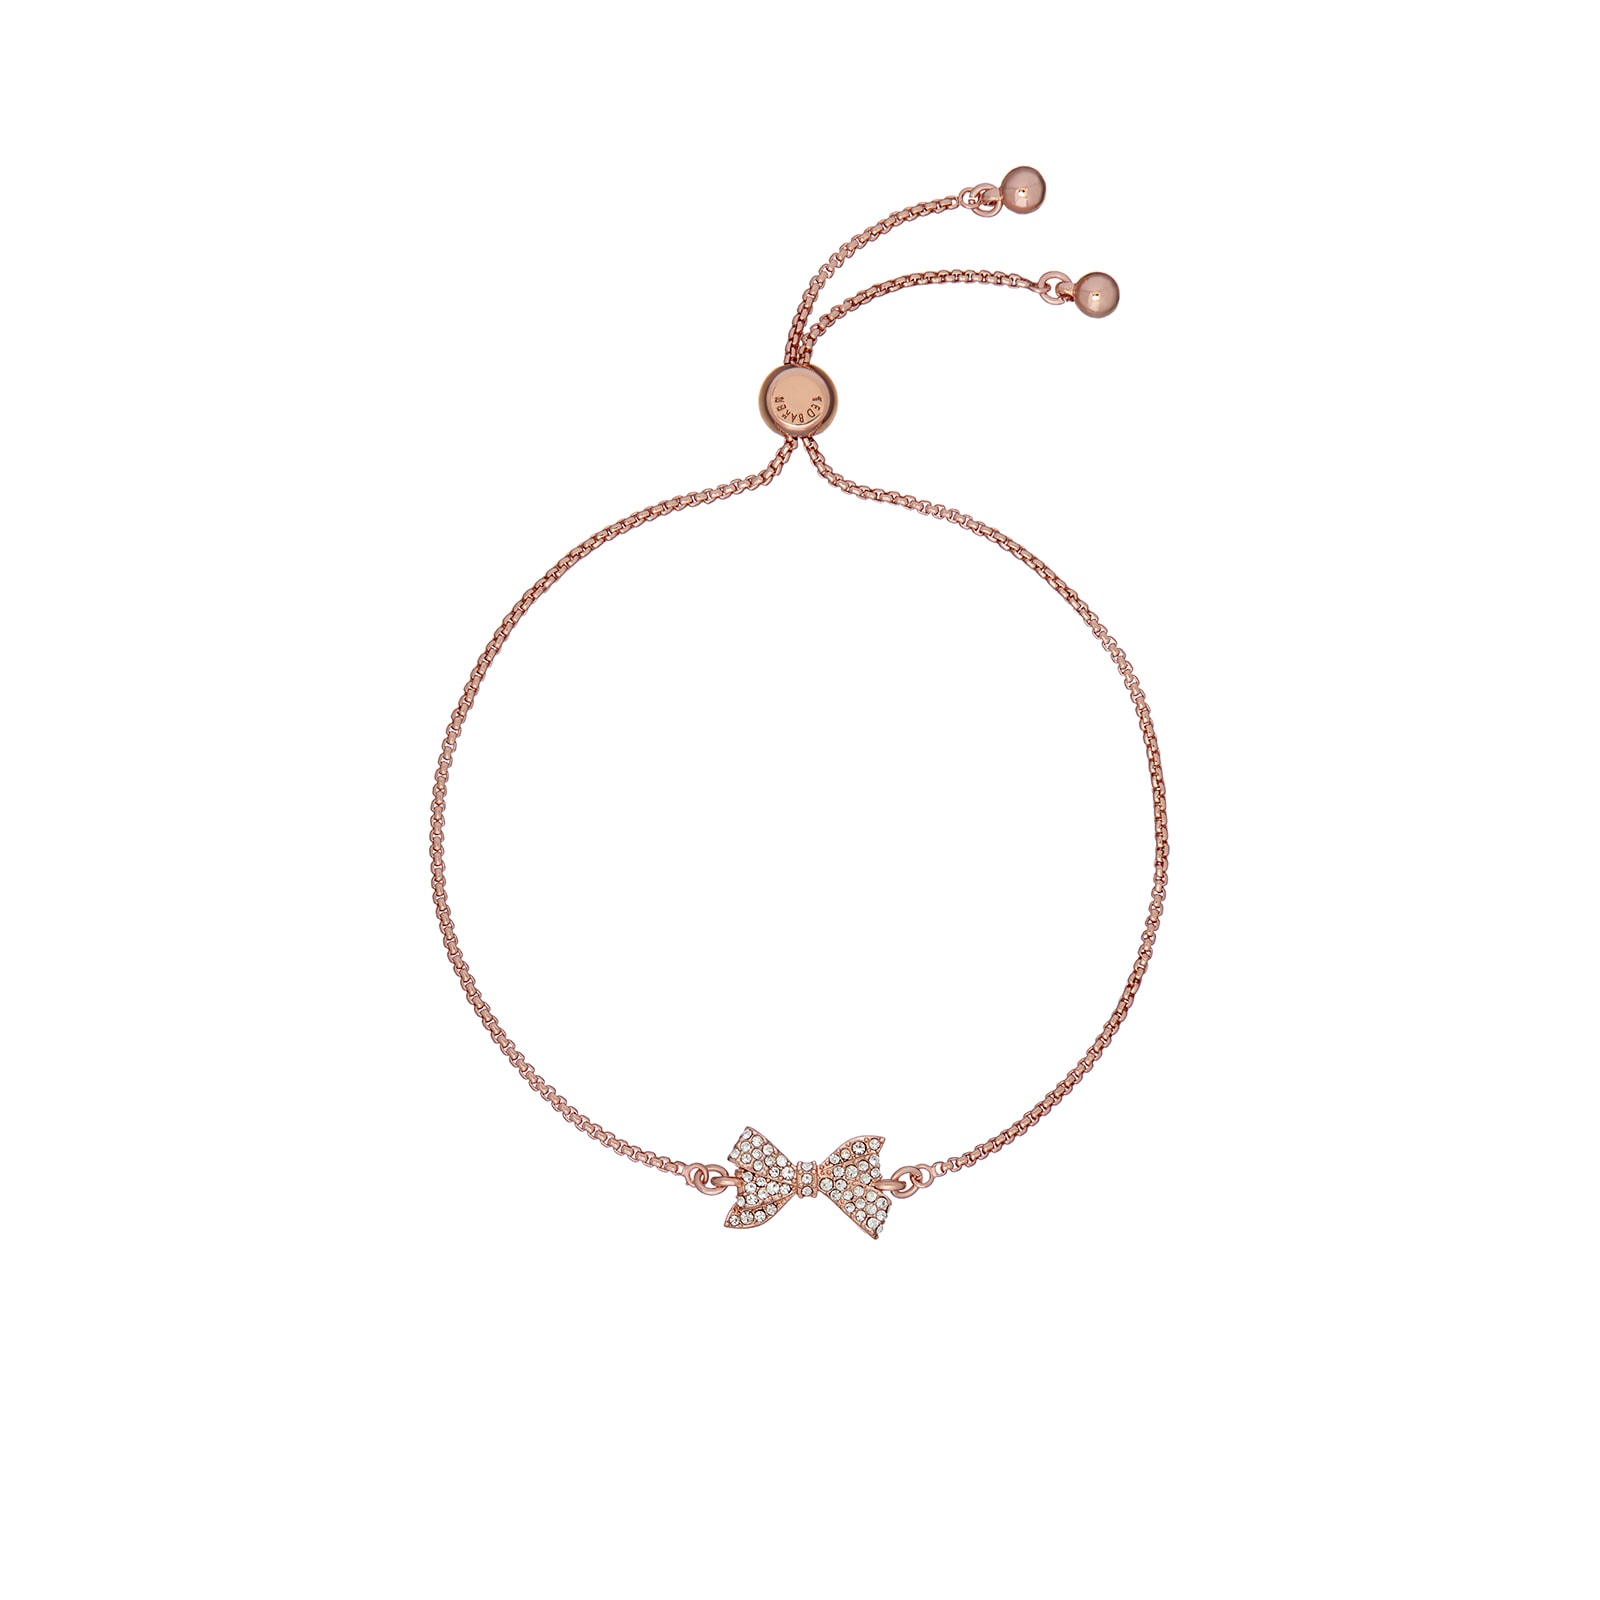 Barset Rose Gold Coloured Crystal Bow Adjustable Bracelet